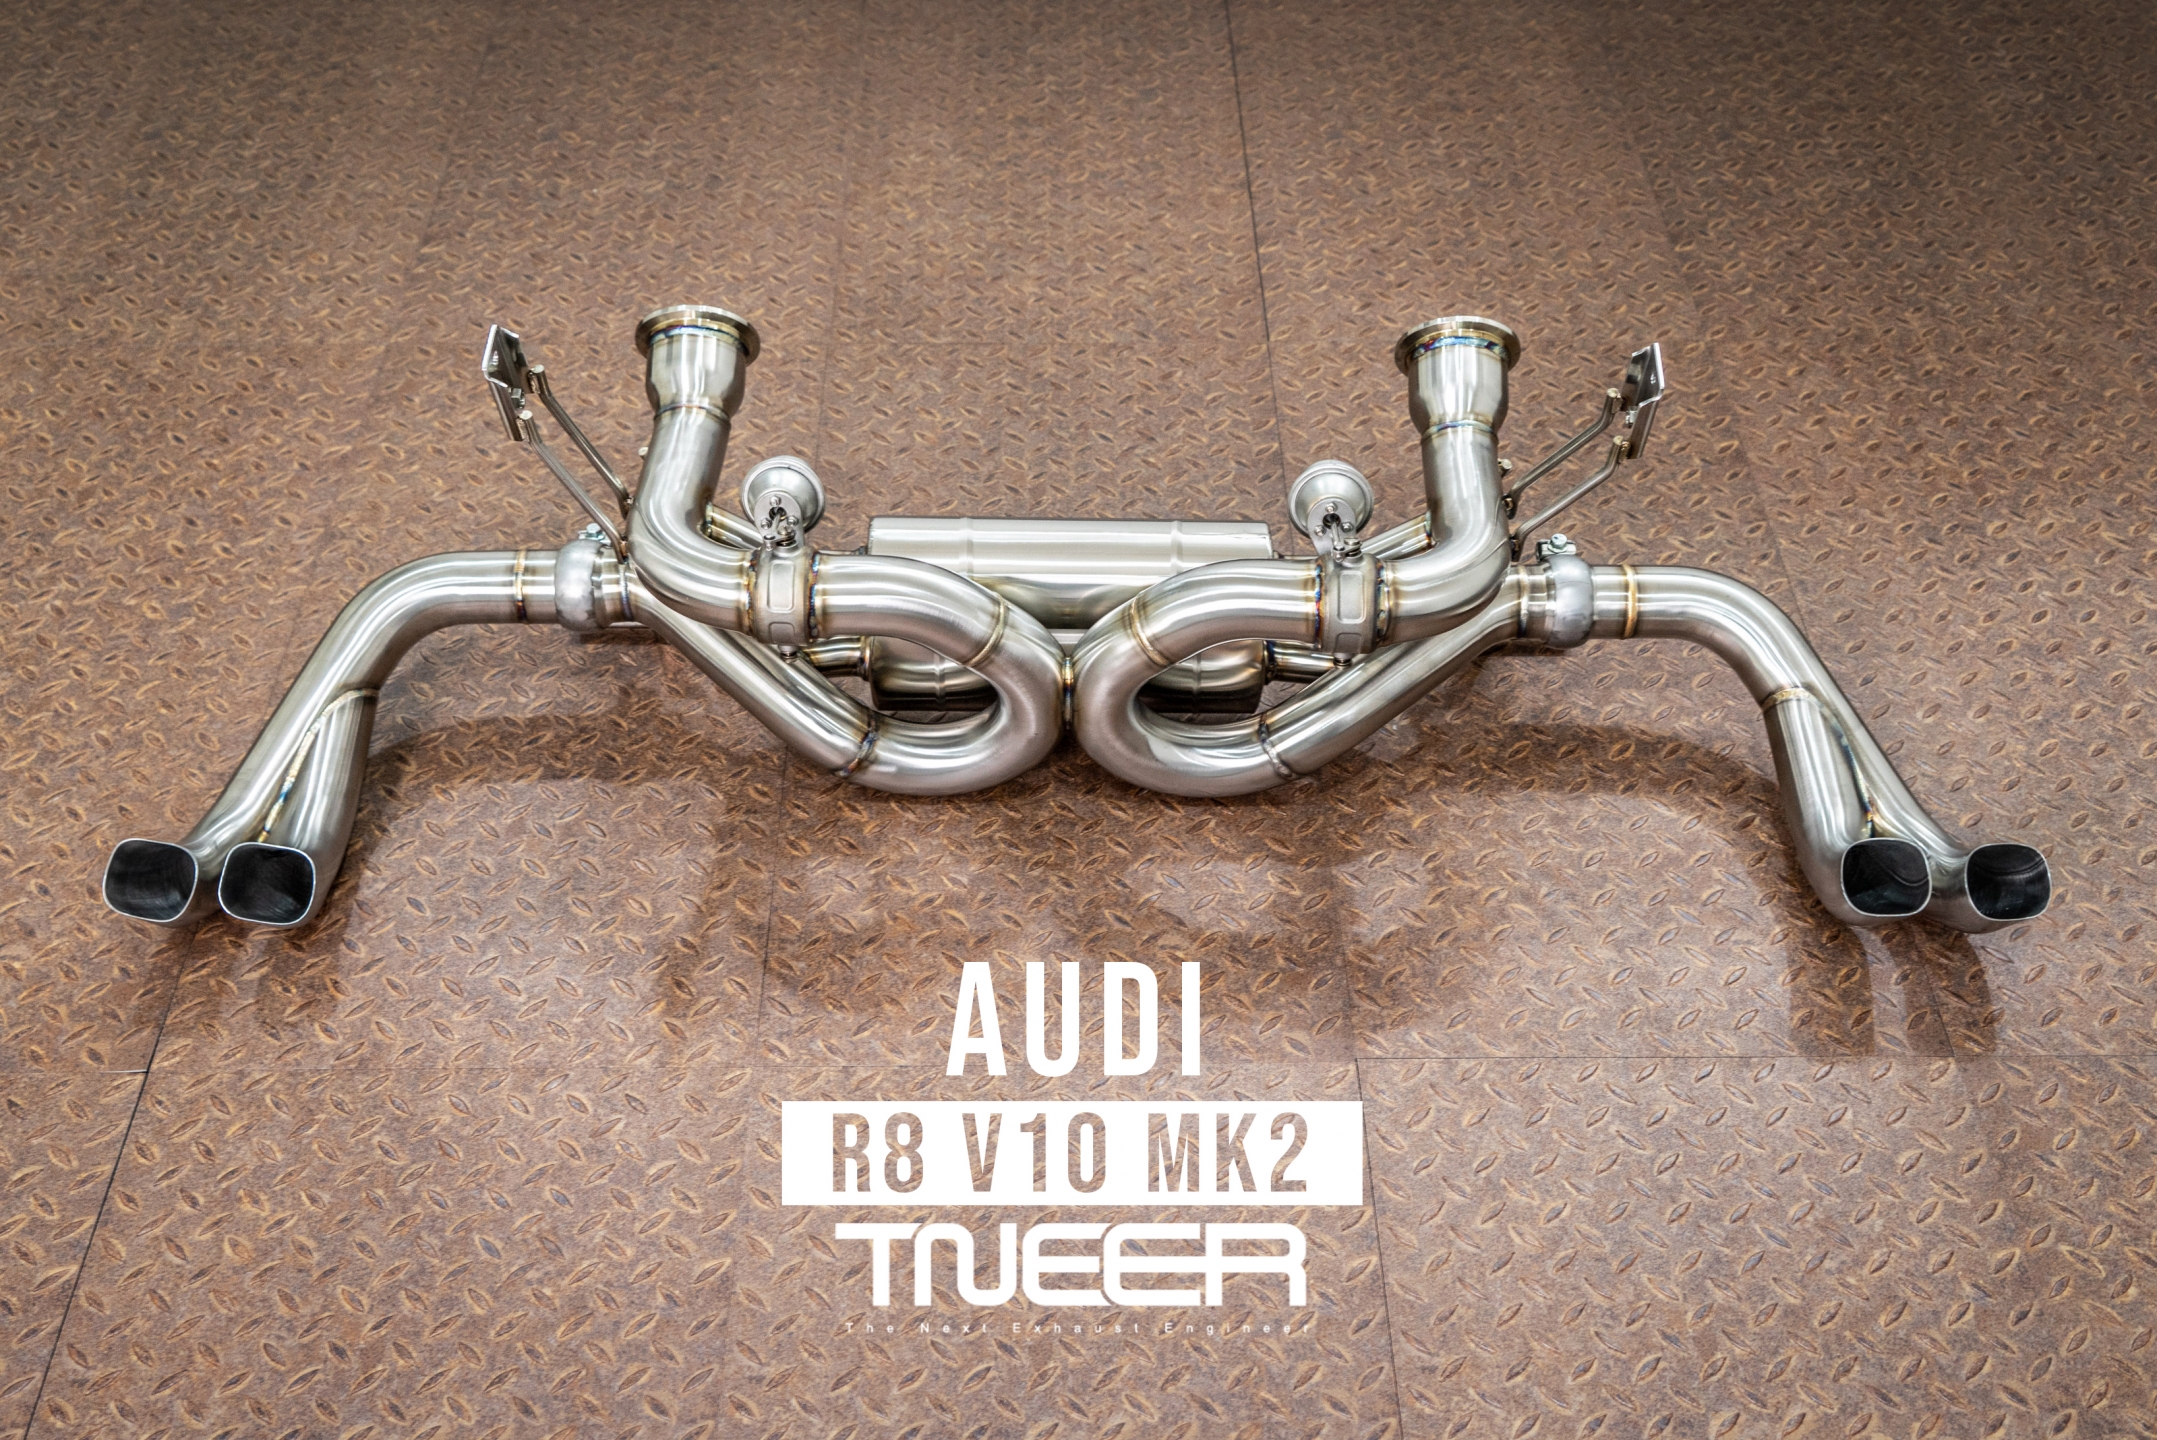 Audi R8 (MK2) V10 TNEER Exhaust System (Valvetronic)